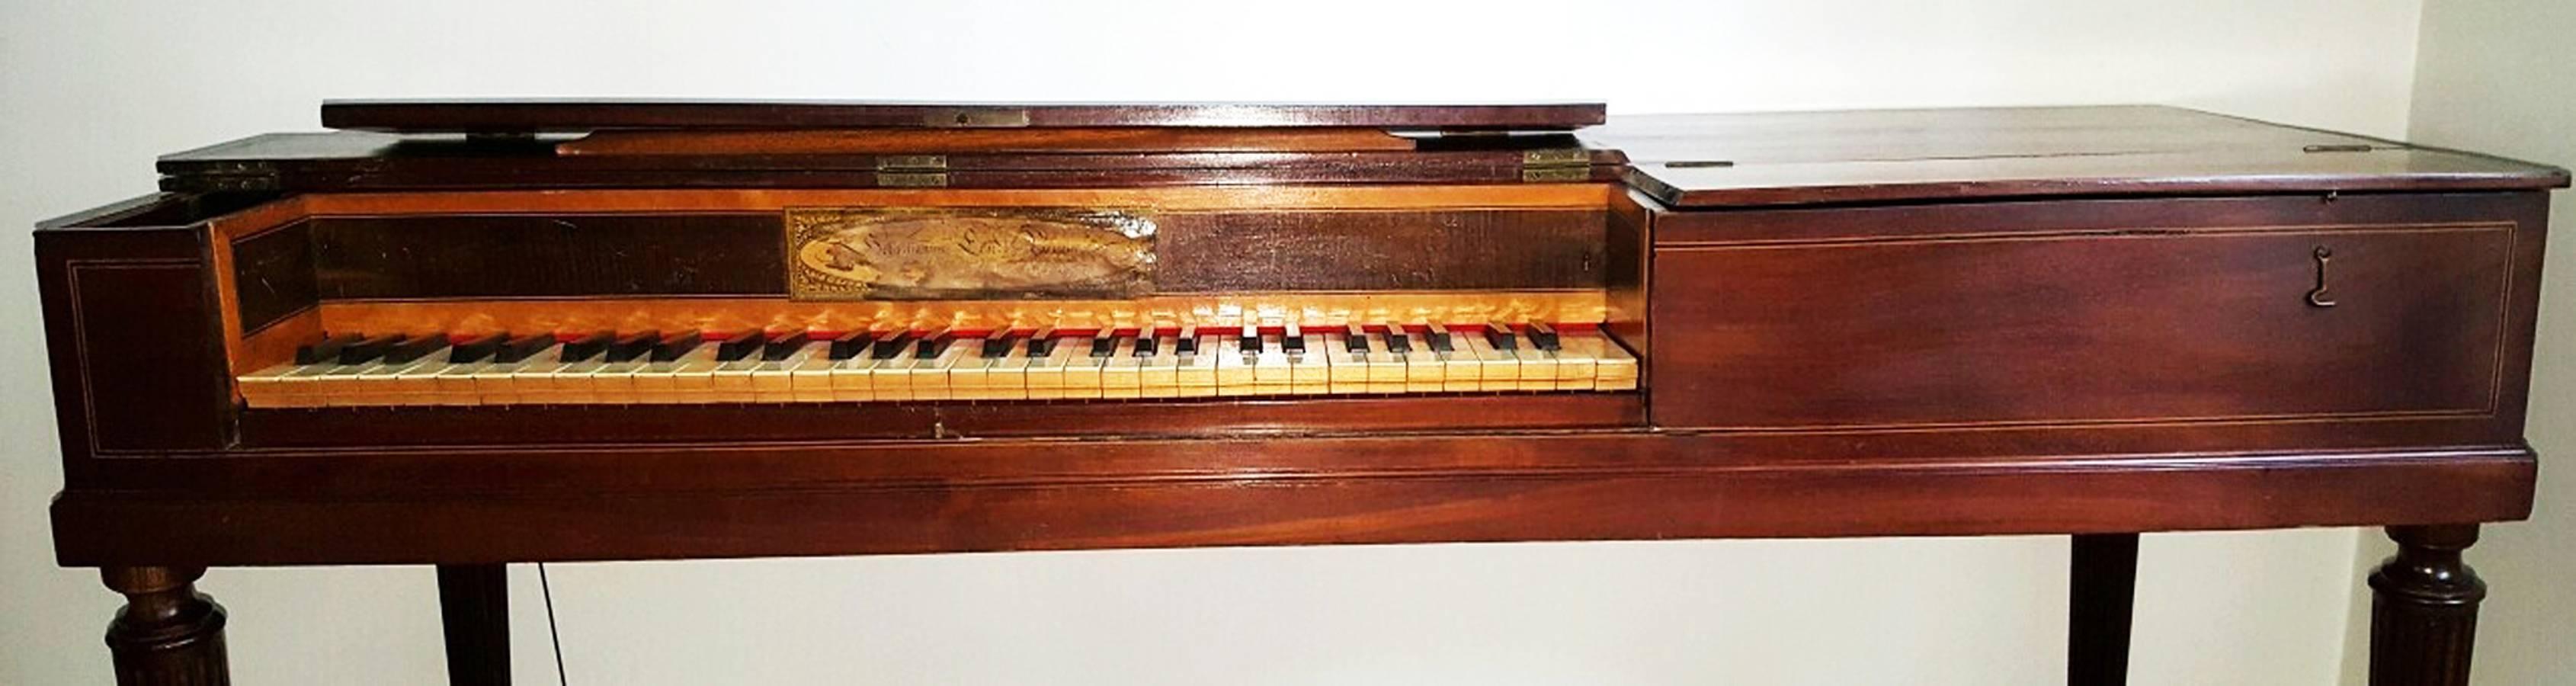 18th century piano price